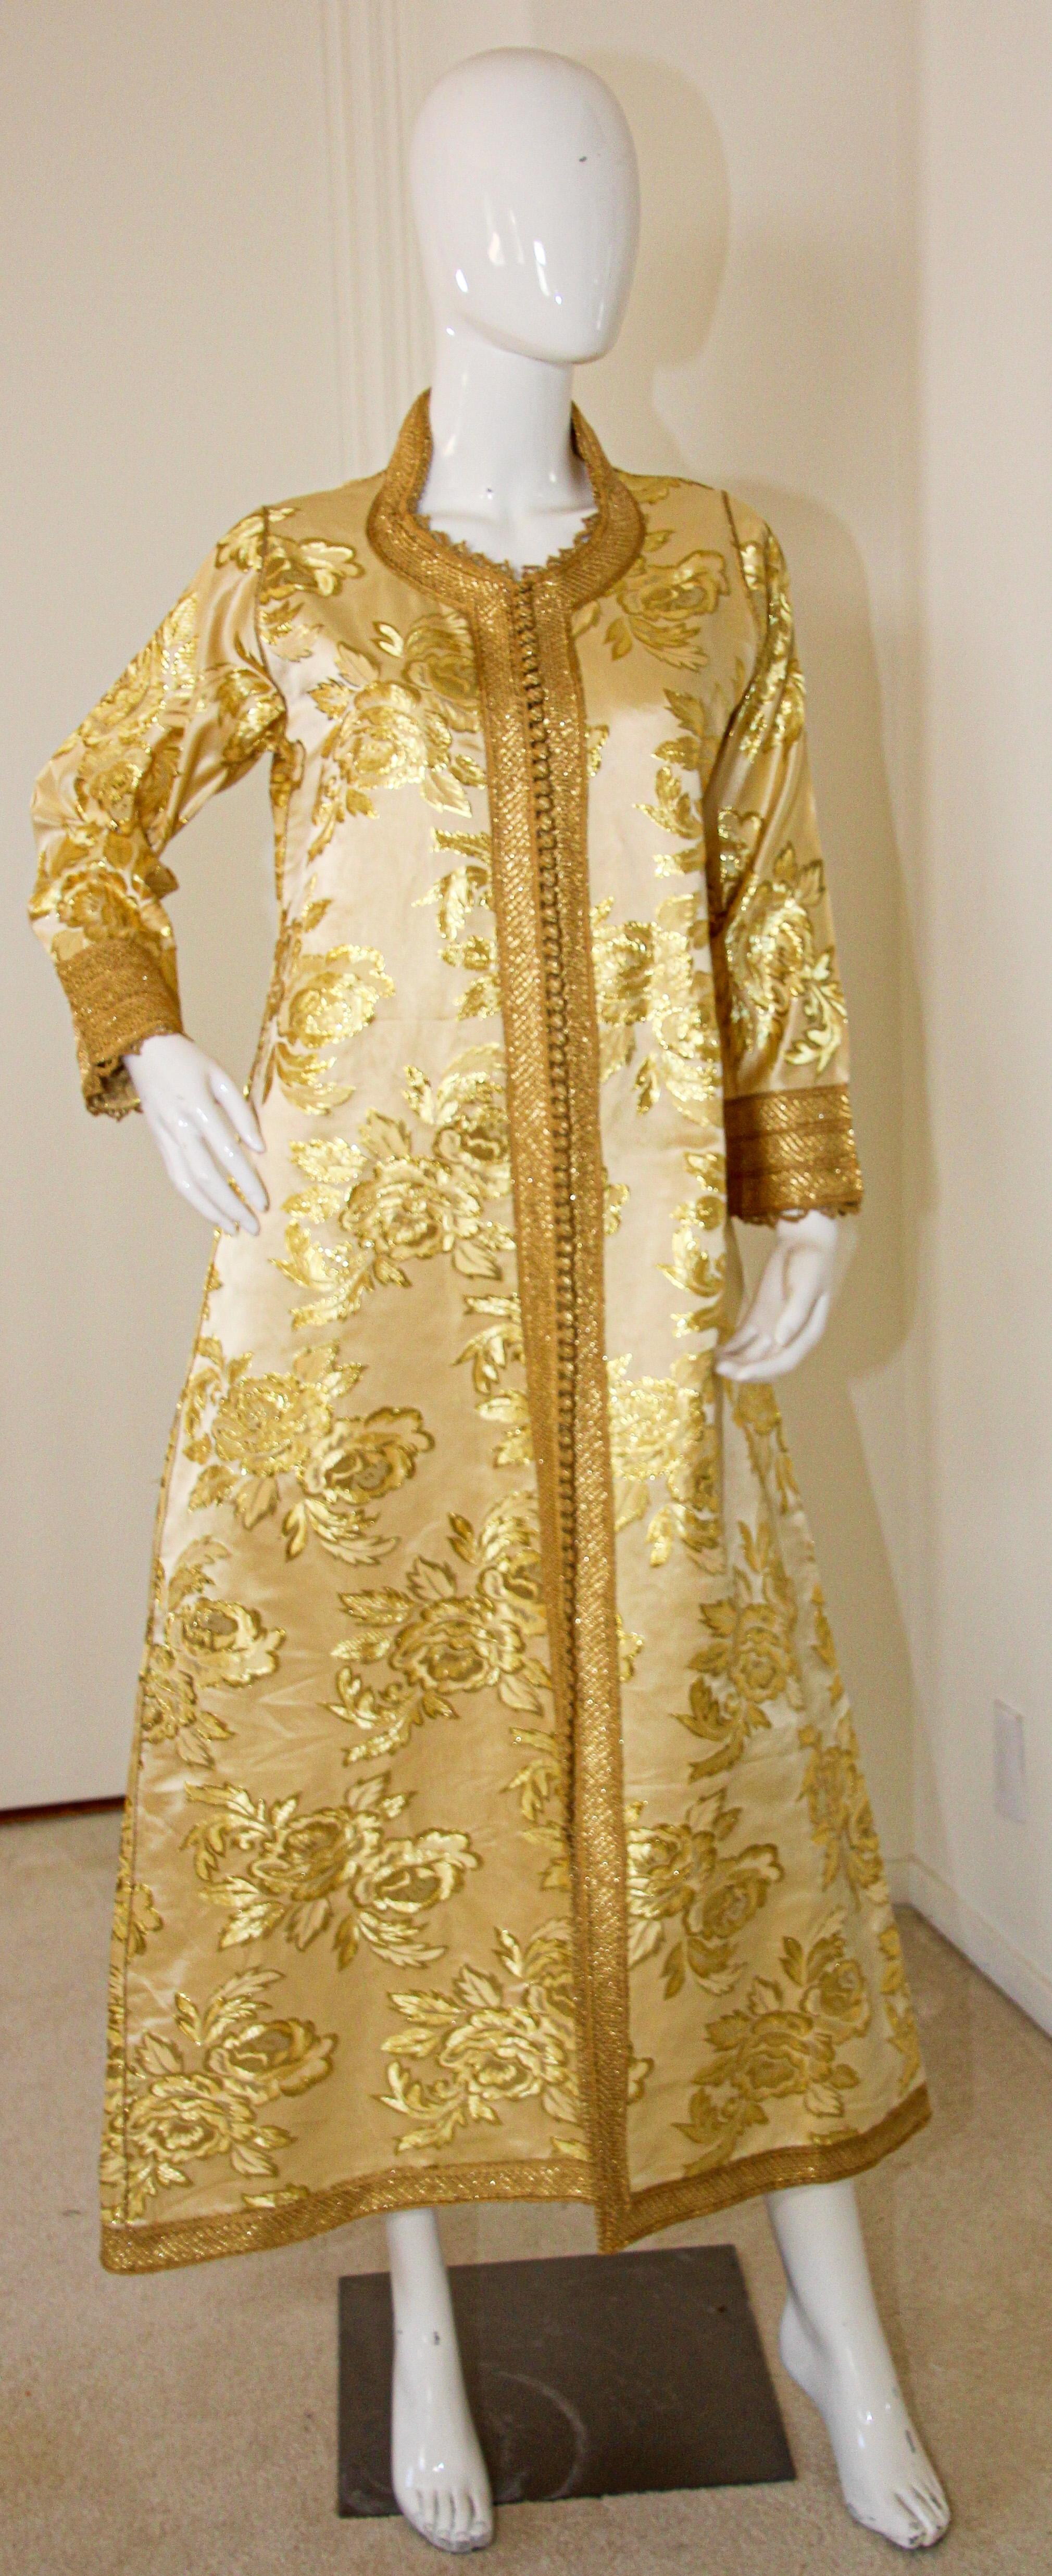 Erstaunlich Vintage marokkanischen Kaftan, Gold Seide Damast Goldfäden trimmen, Circa 1960's
Der hellgoldene Damastkaftan wurde vollständig von Hand gefertigt.
Einzigartiges antikes maurisches Abendkleid.
Dieser authentische Kaftan wurde von Hand